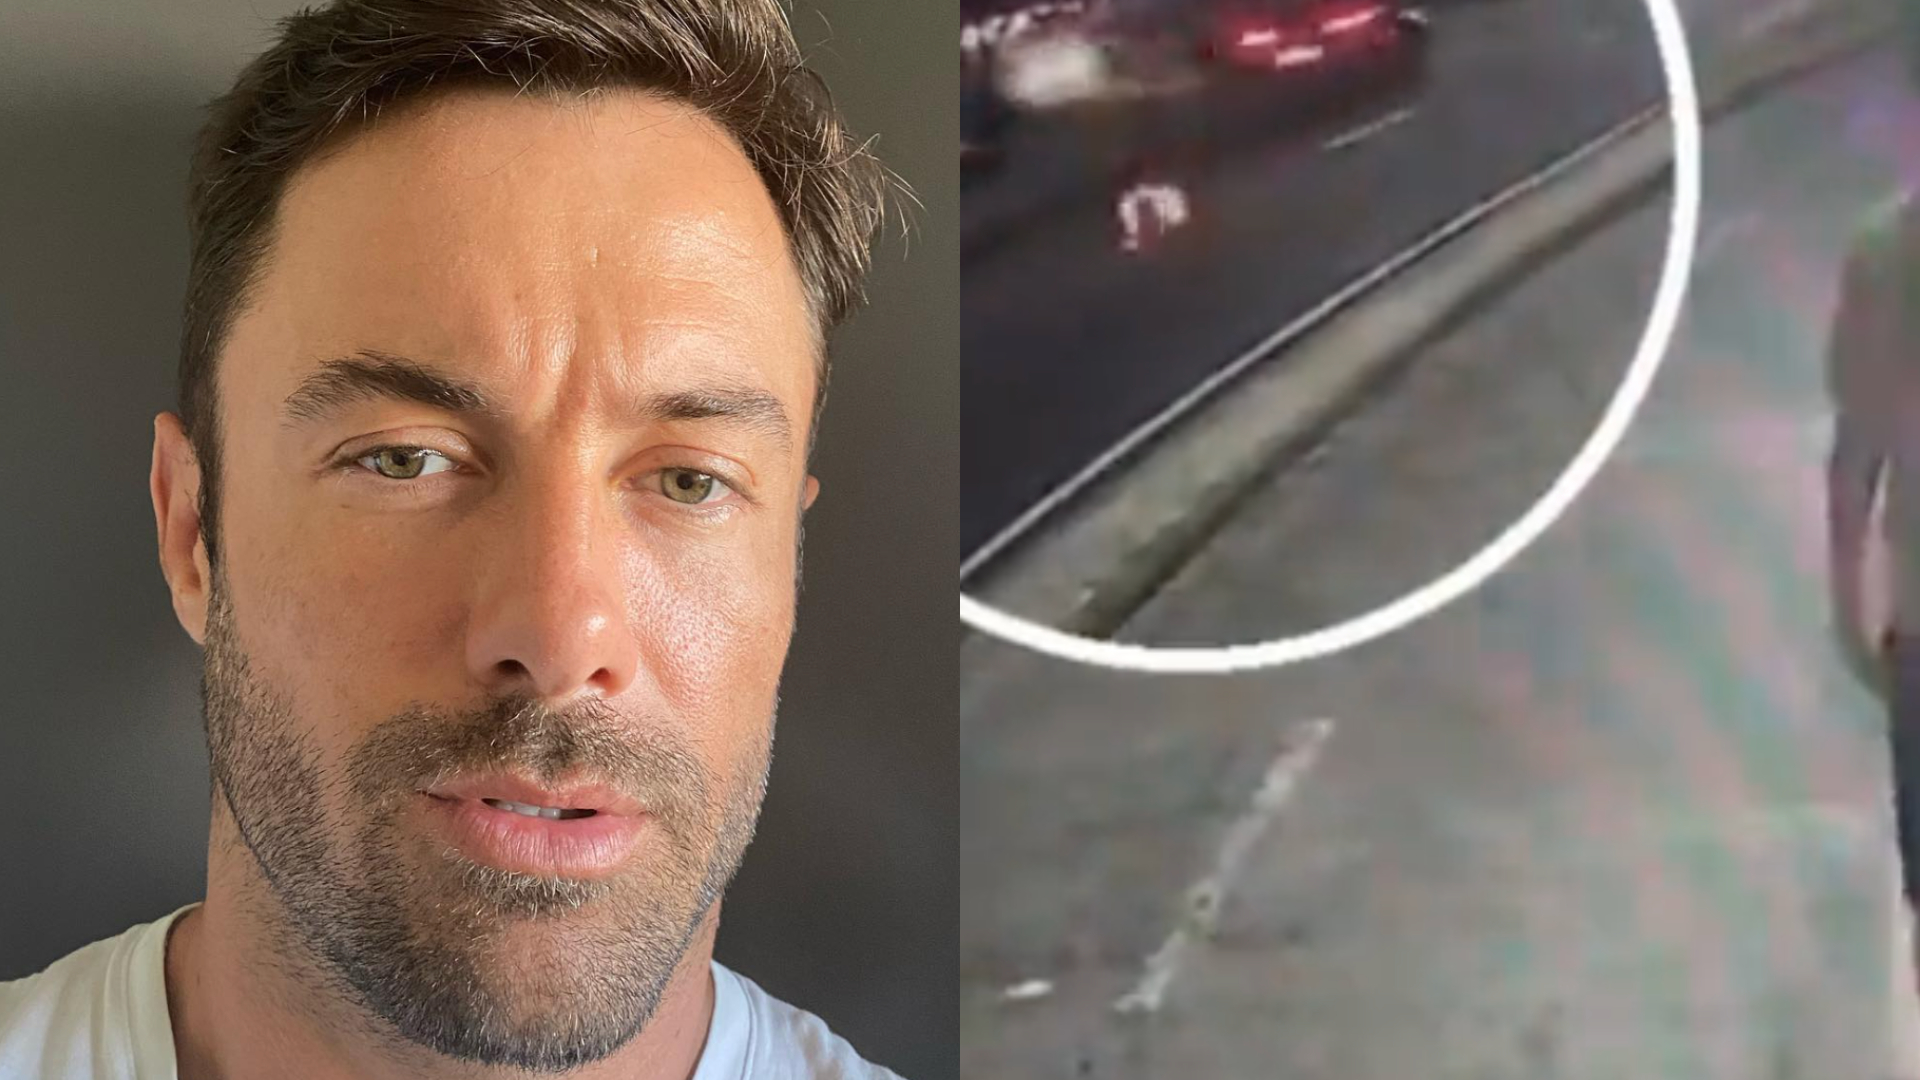 Vídeo: Kayky Brito quase foi atingido por outro carro antes de acidente